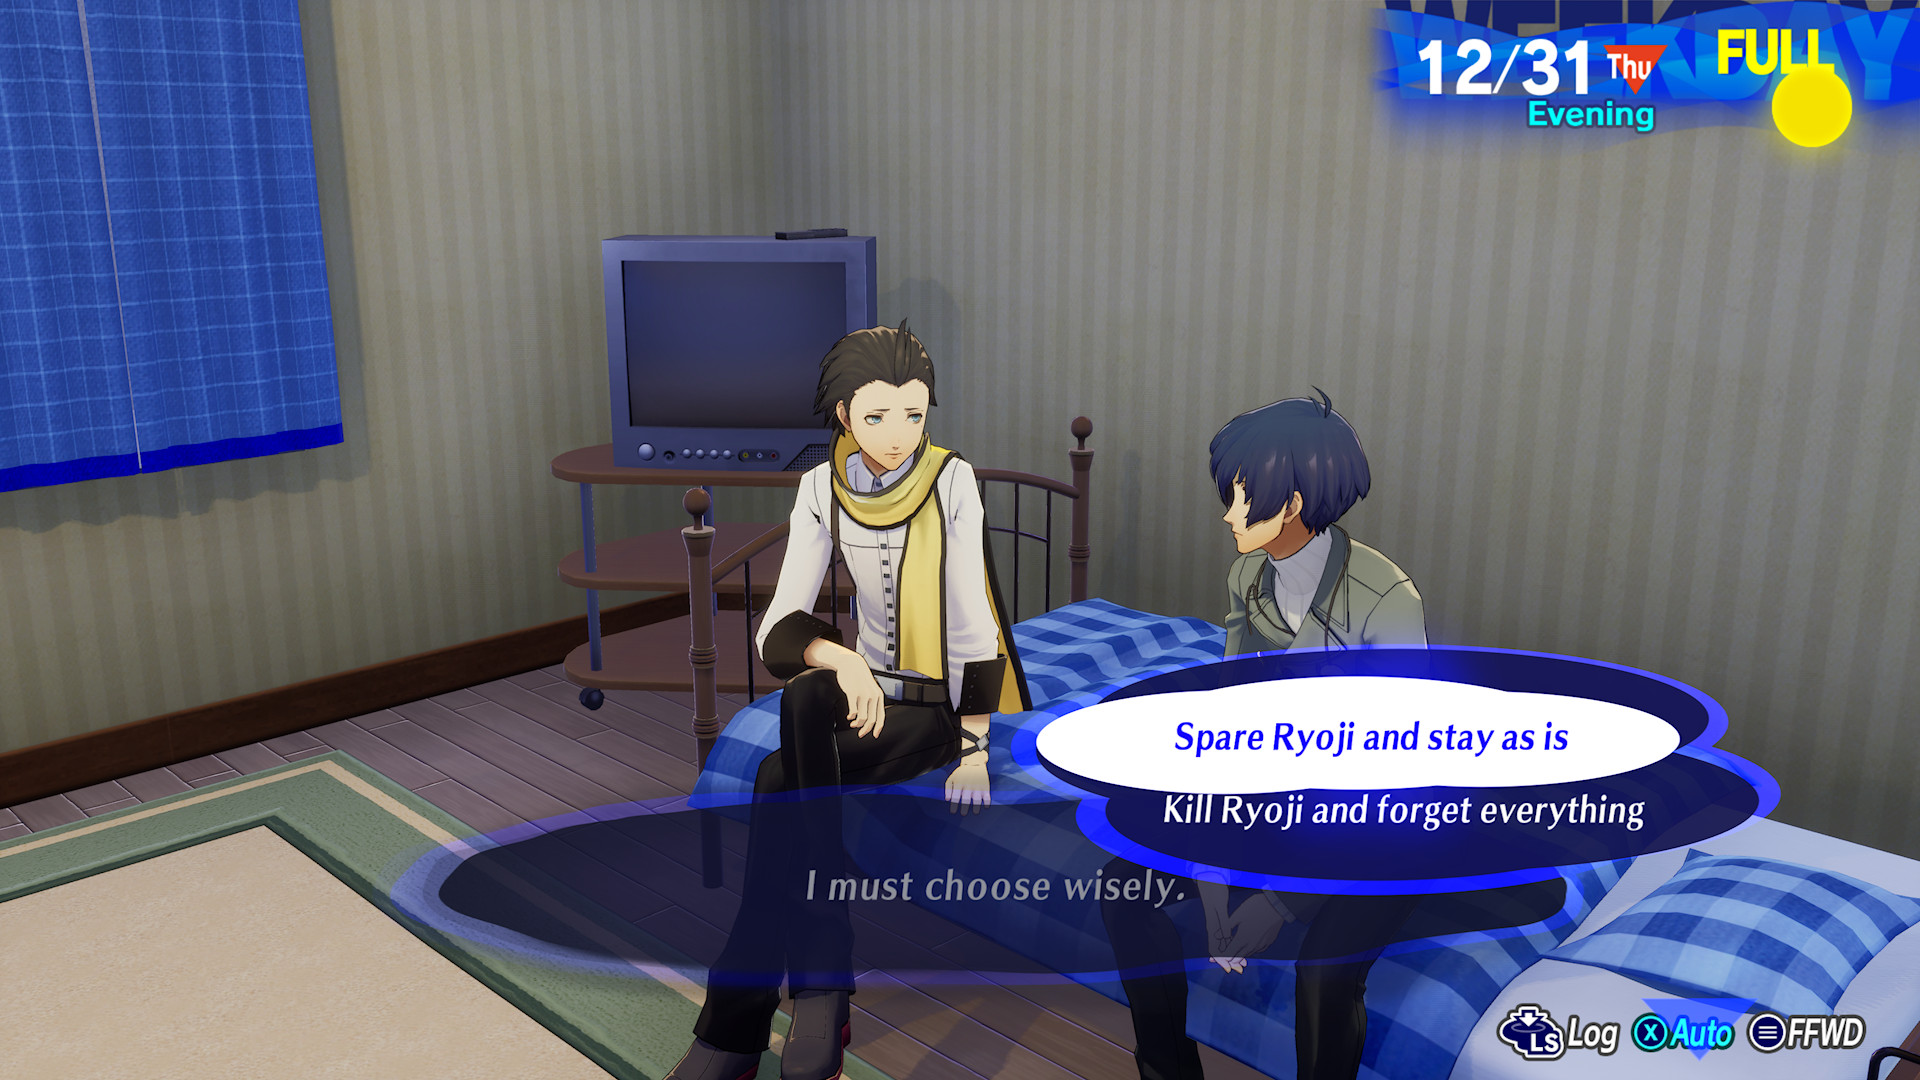 Ryoji chiede al giocatore di ucciderlo in Persona 3 Reload